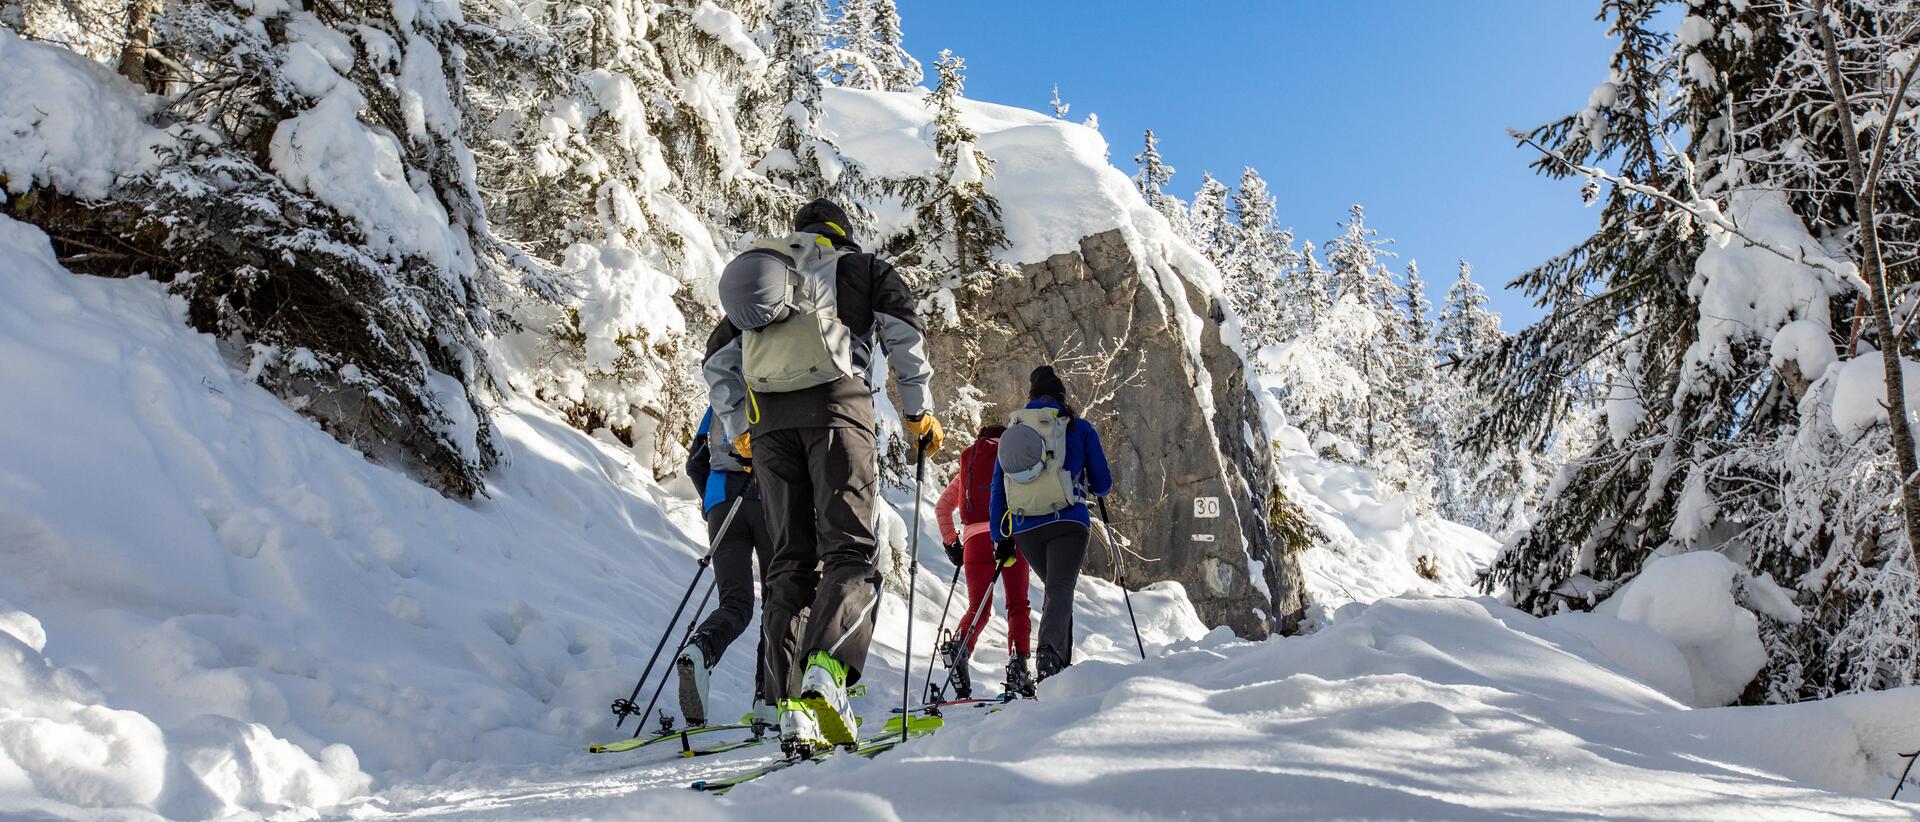 ludzie trenujący skitouring  w górach